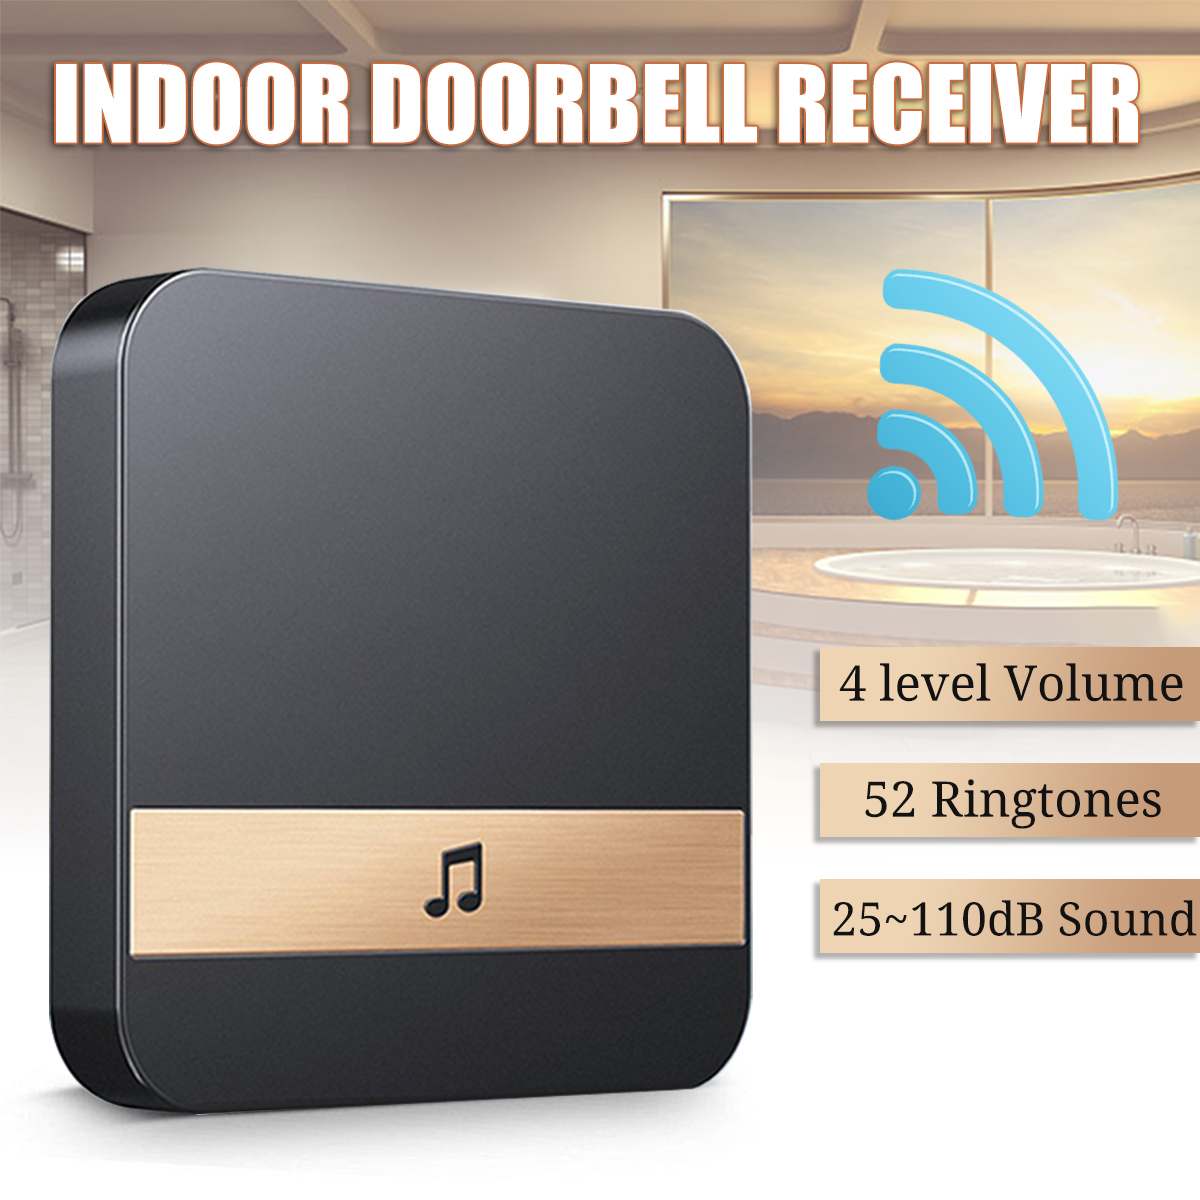 Høj lyd klokke dørklokke modtager ding dong til smart trådløs wifi video dørklokke hjemme sikkerhed indendørs intercom dørklokke